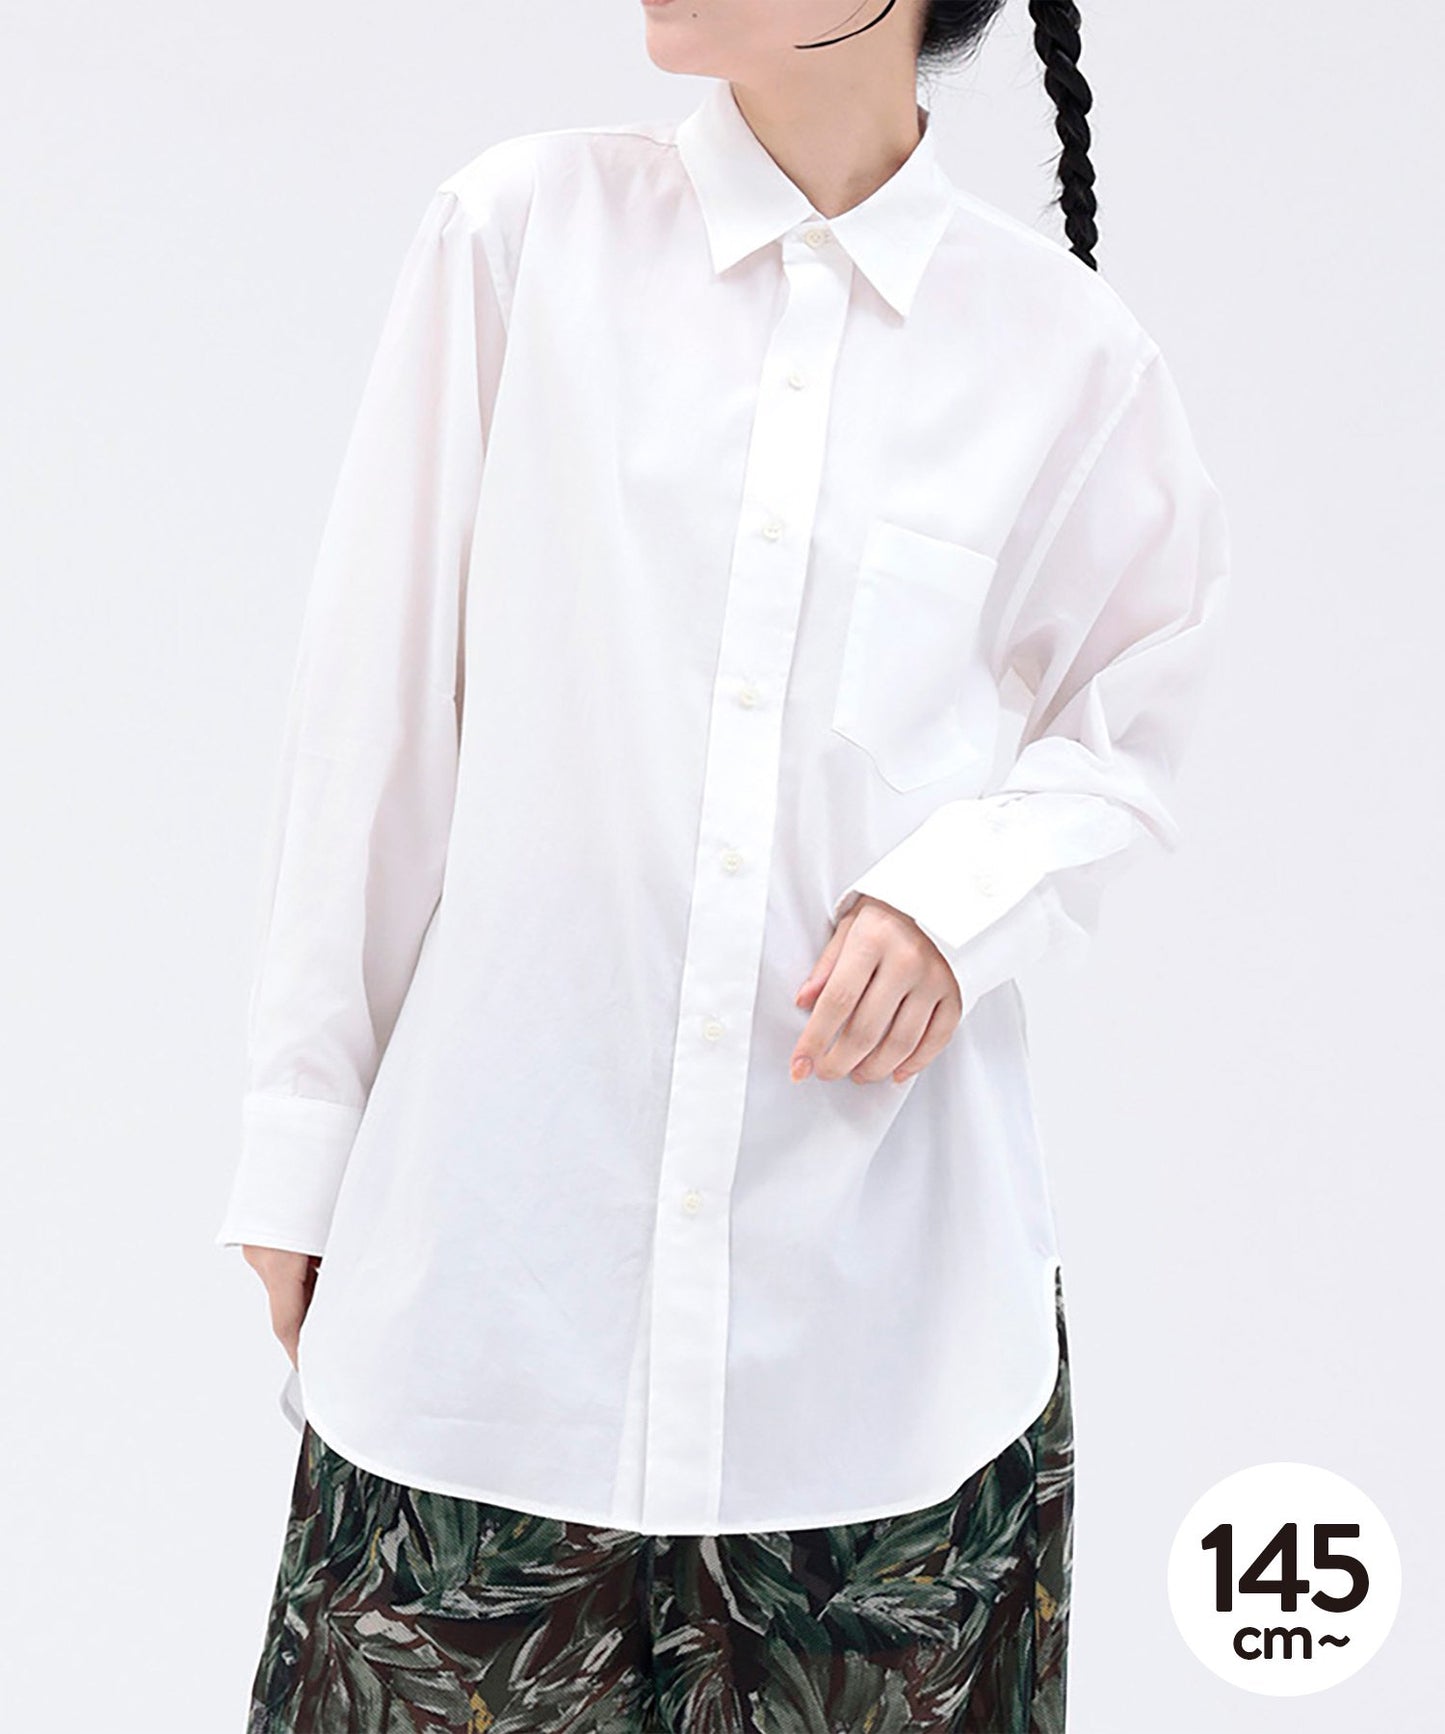 【環保材質】標準色襯衫 上下襯衫【145-175cm】